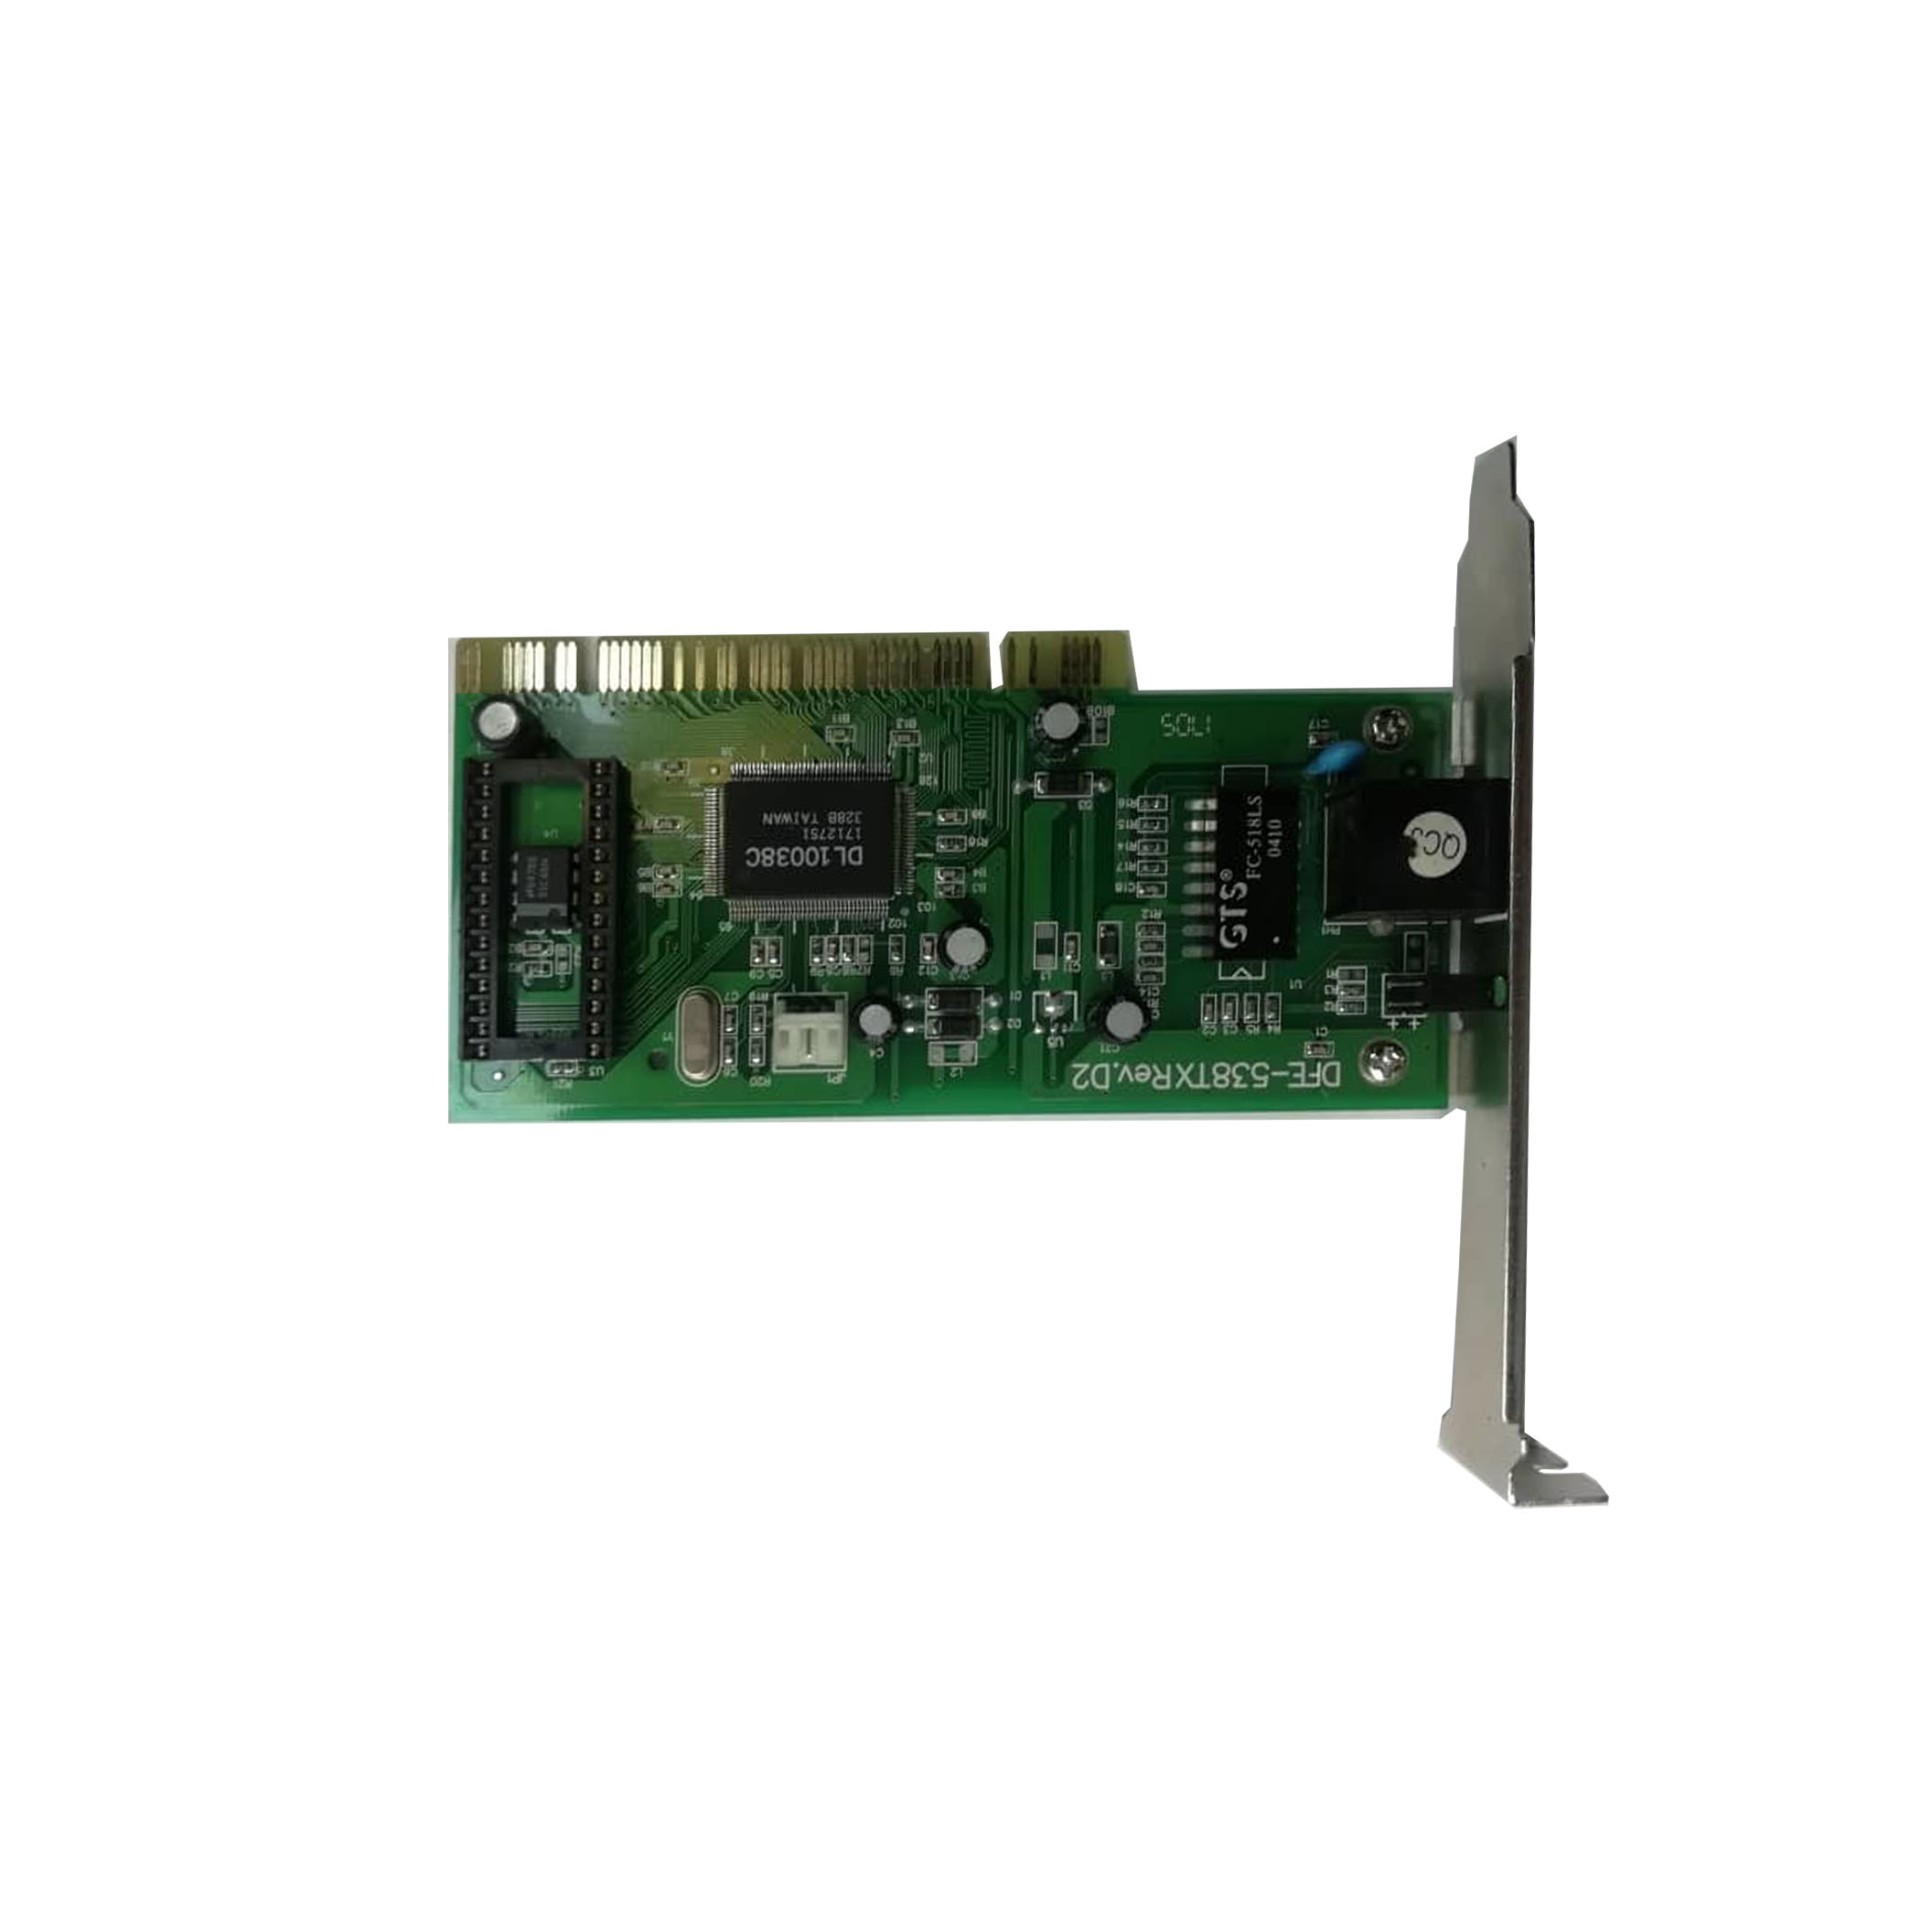 کارت شبکه PCI دی-لینک مدل DE-528CT